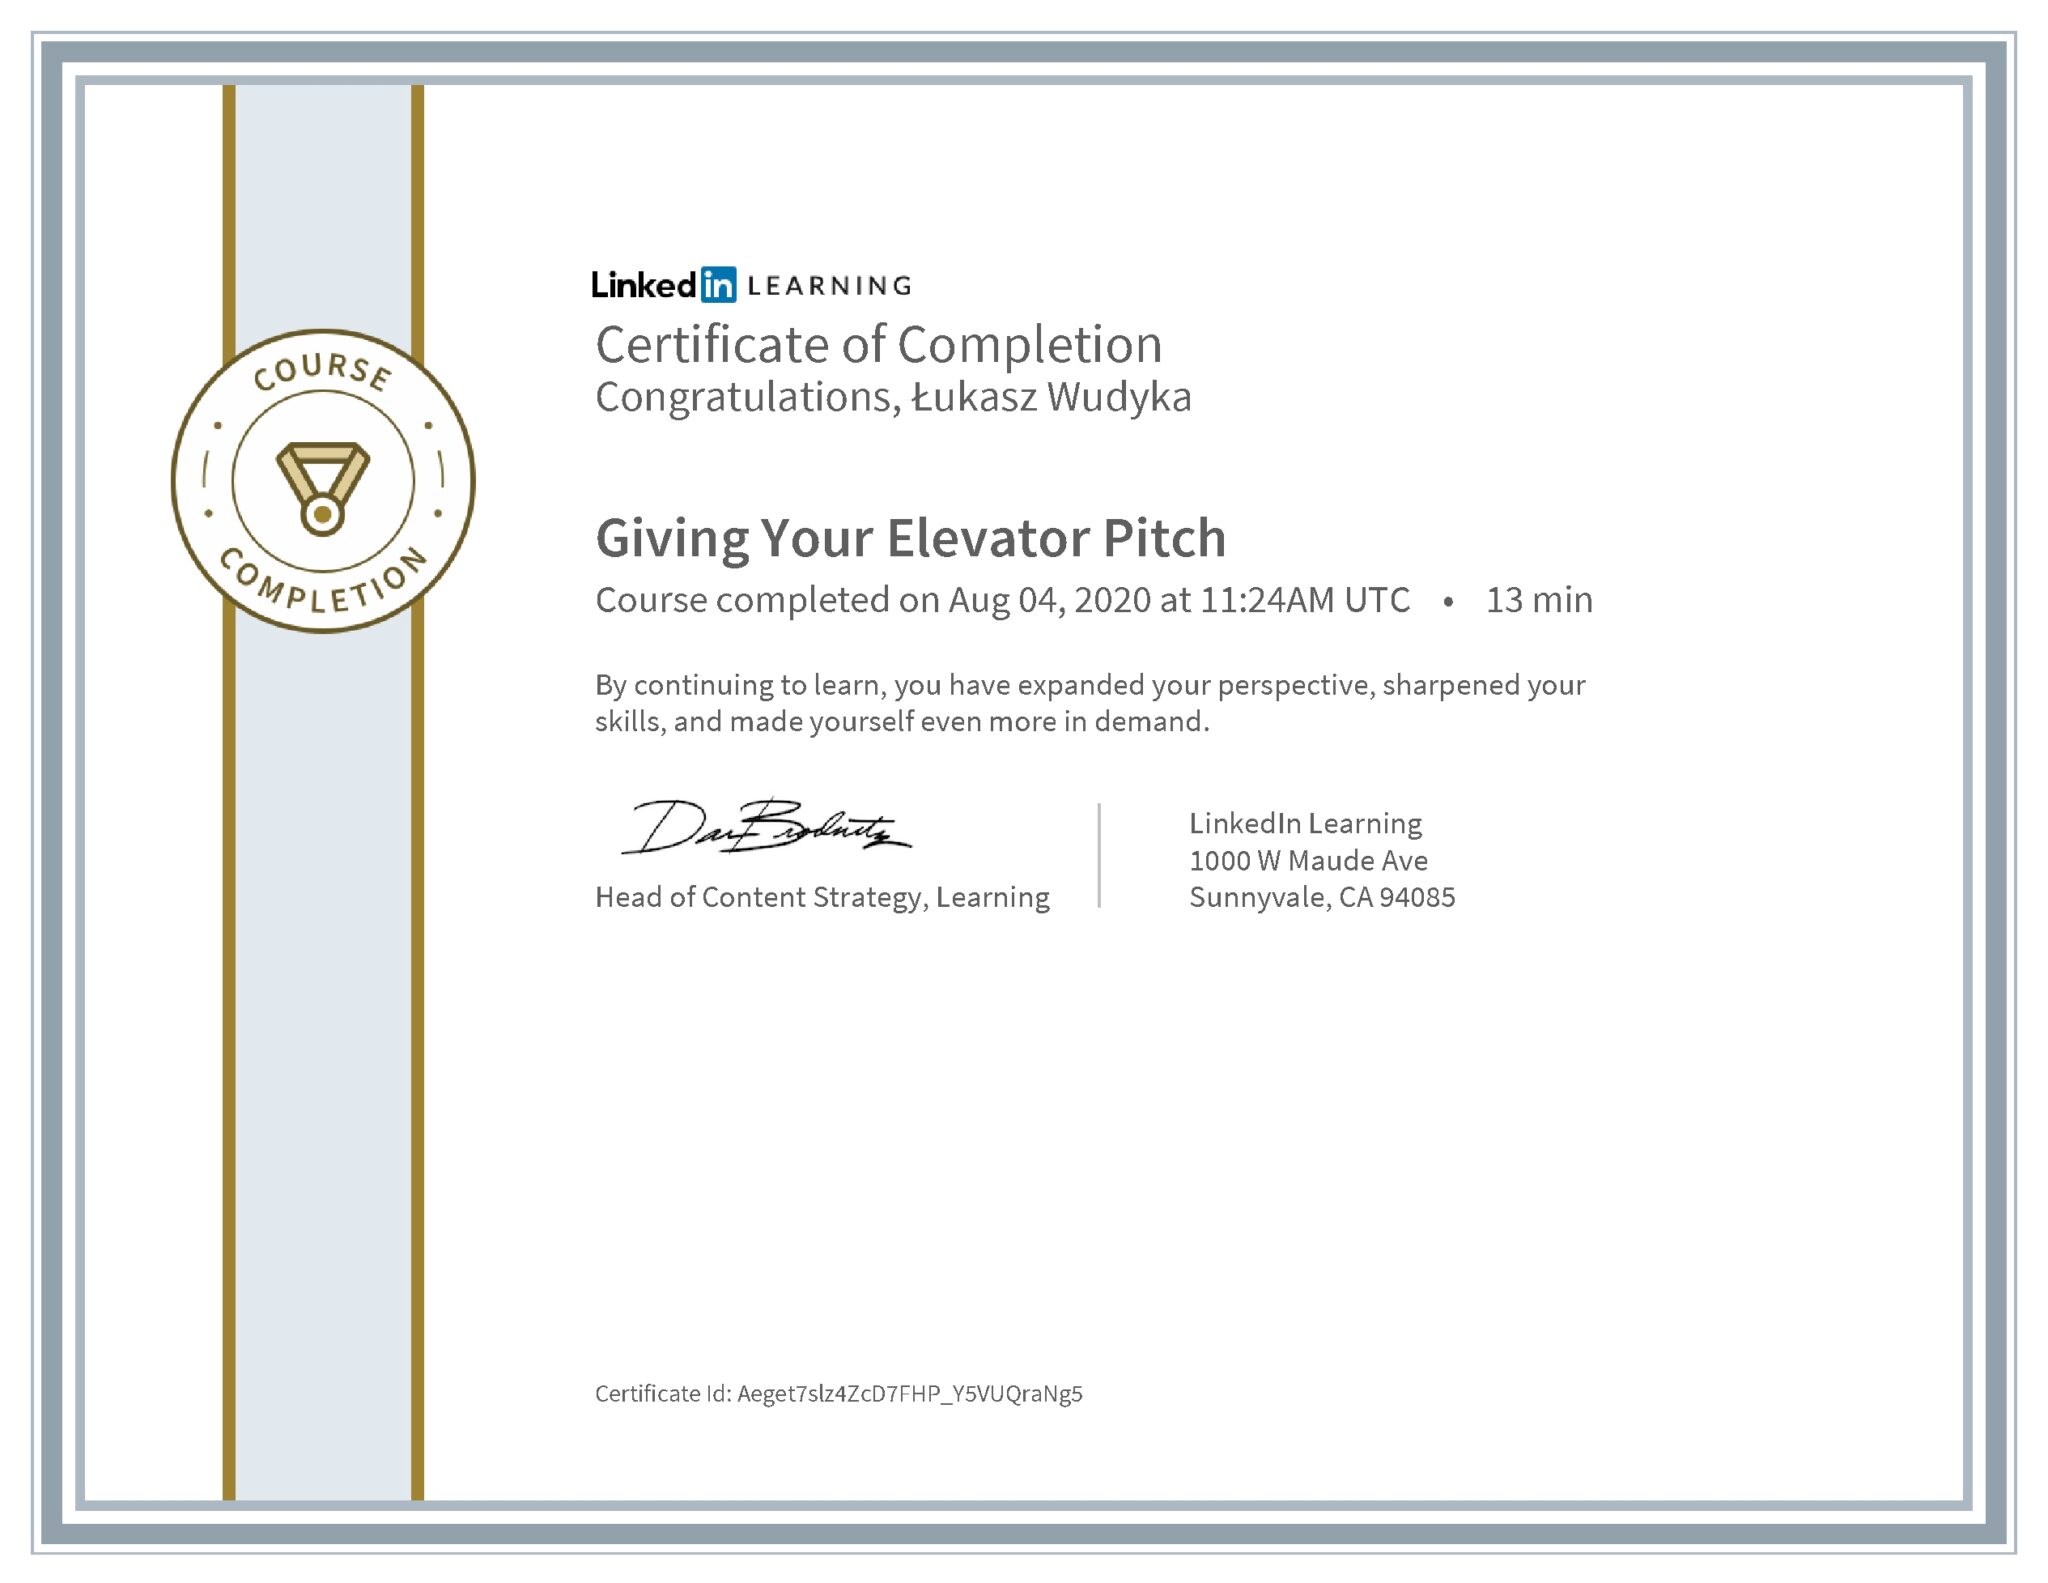 Łukasz Wudyka certyfikat LinkedIn Giving Your Elevator Pitch